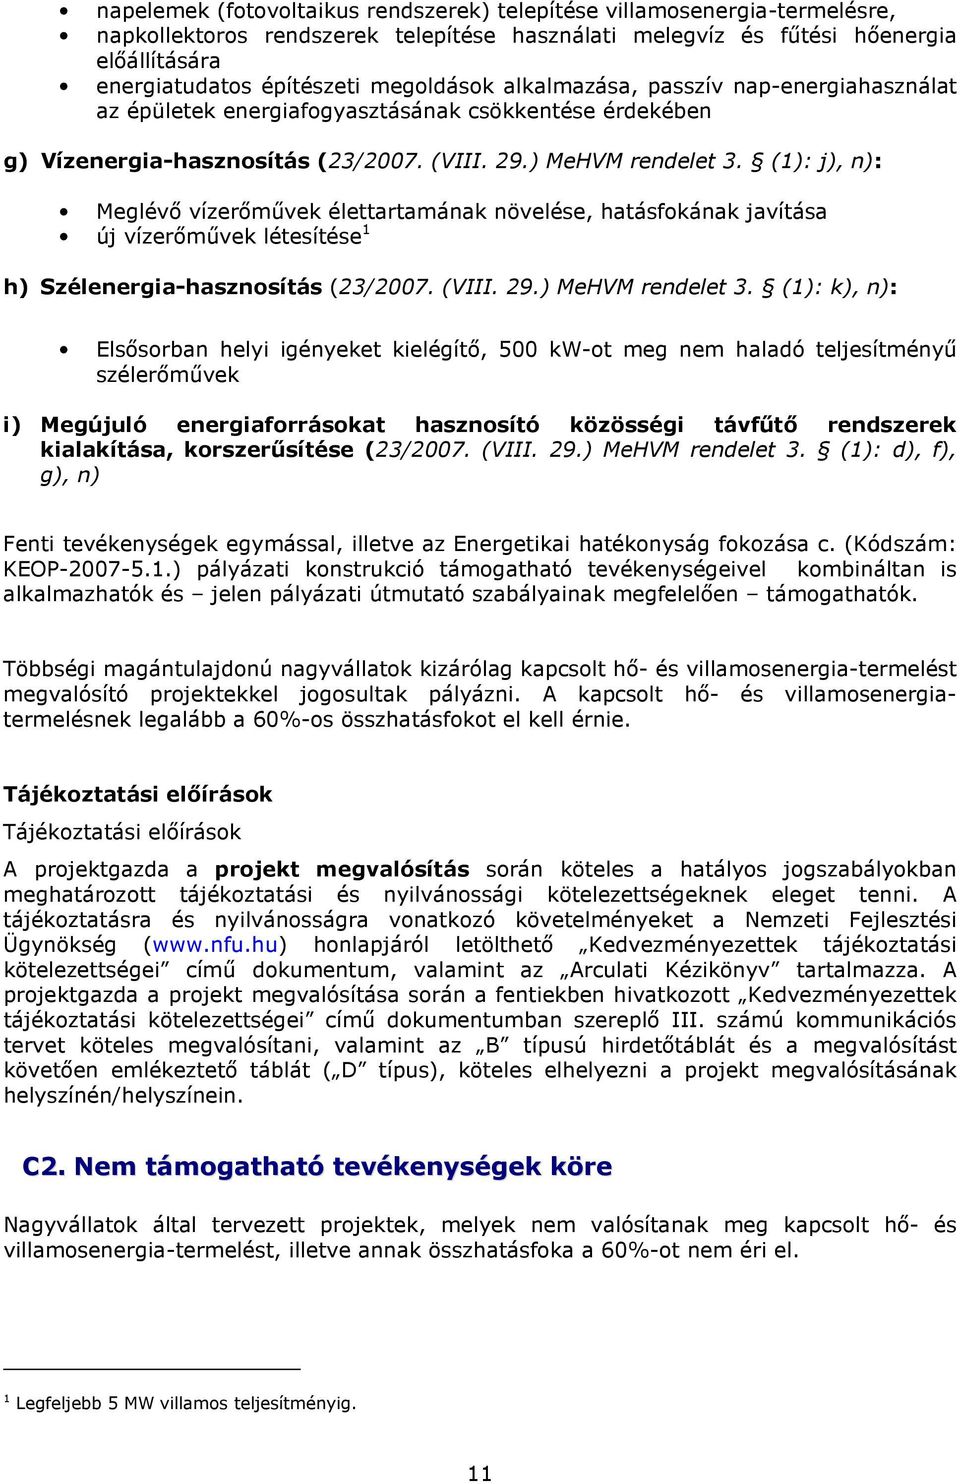 (1): j), n): Meglévı vízerımővek élettartamának növelése, hatásfokának javítása új vízerımővek létesítése 1 h) Szélenergia-hasznosítás (23/2007. (VIII. 29.) MeHVM rendelet 3.